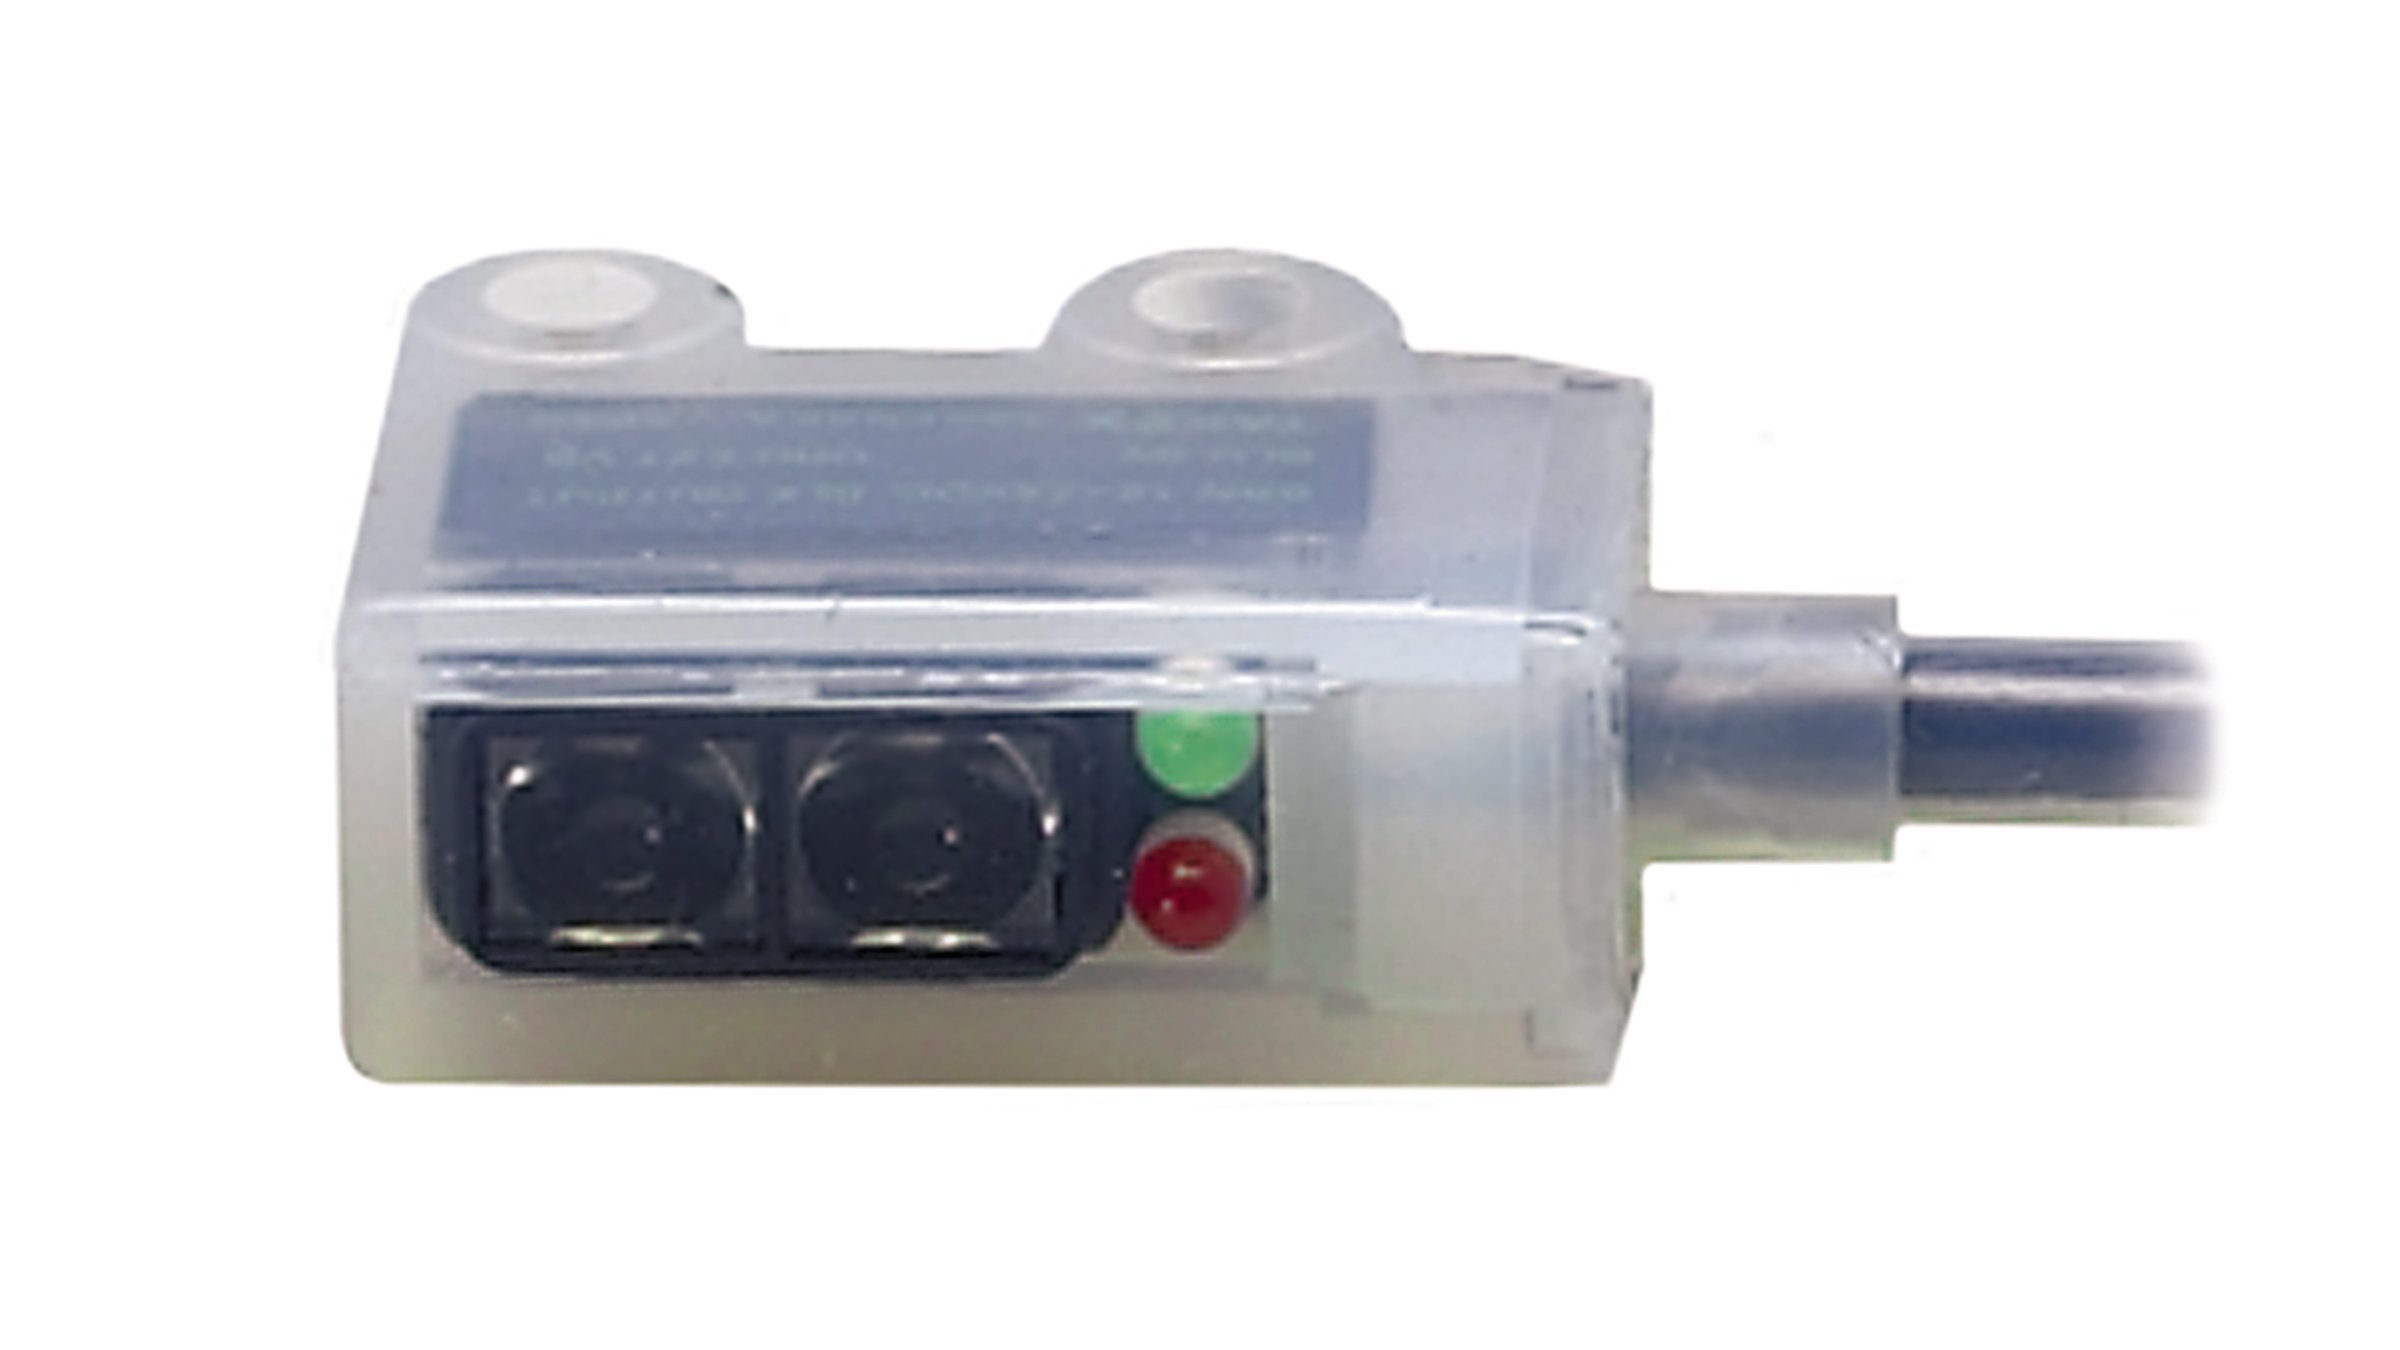 具有红色和绿色 LED 指示灯与集成电缆的 Allen-Bradley 半透明全包传感器。